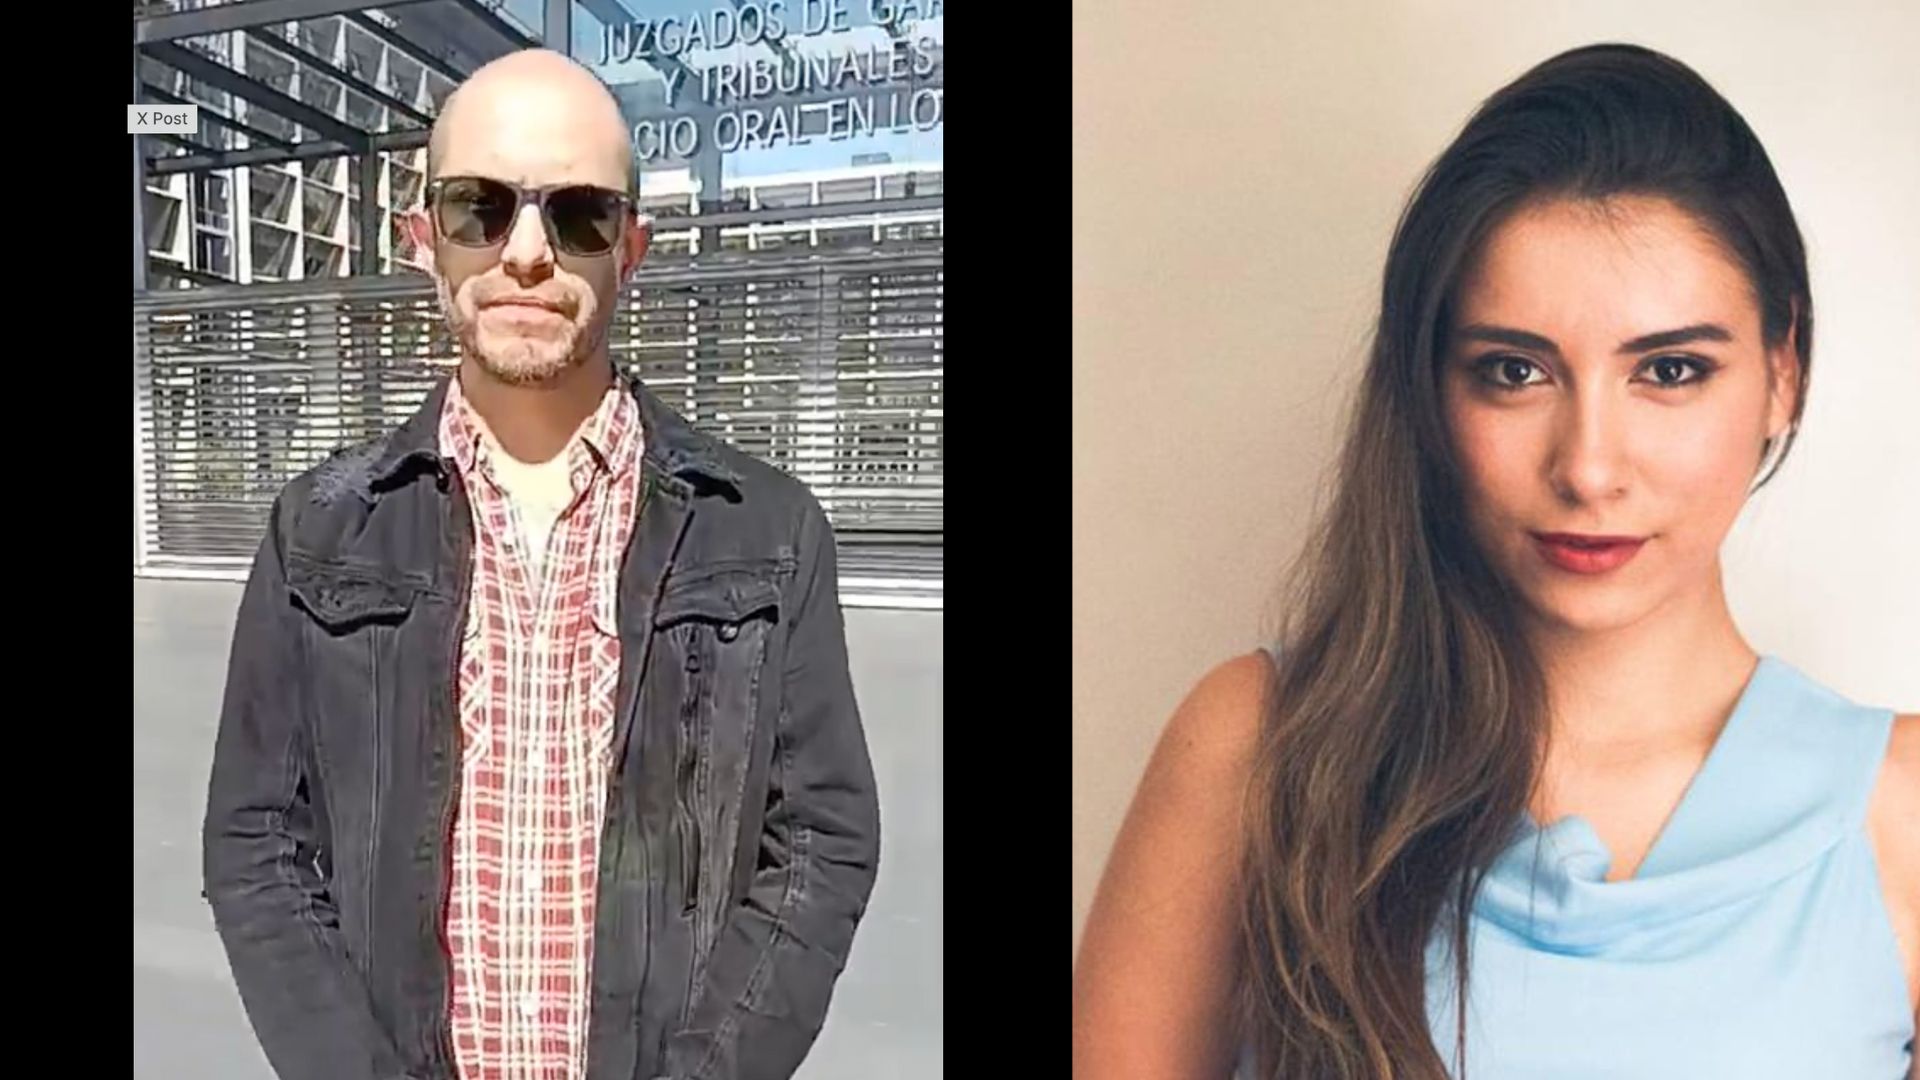 Los periodistas chilenos Daniel Labay y Josefa Barraza enfrentan cargos penales